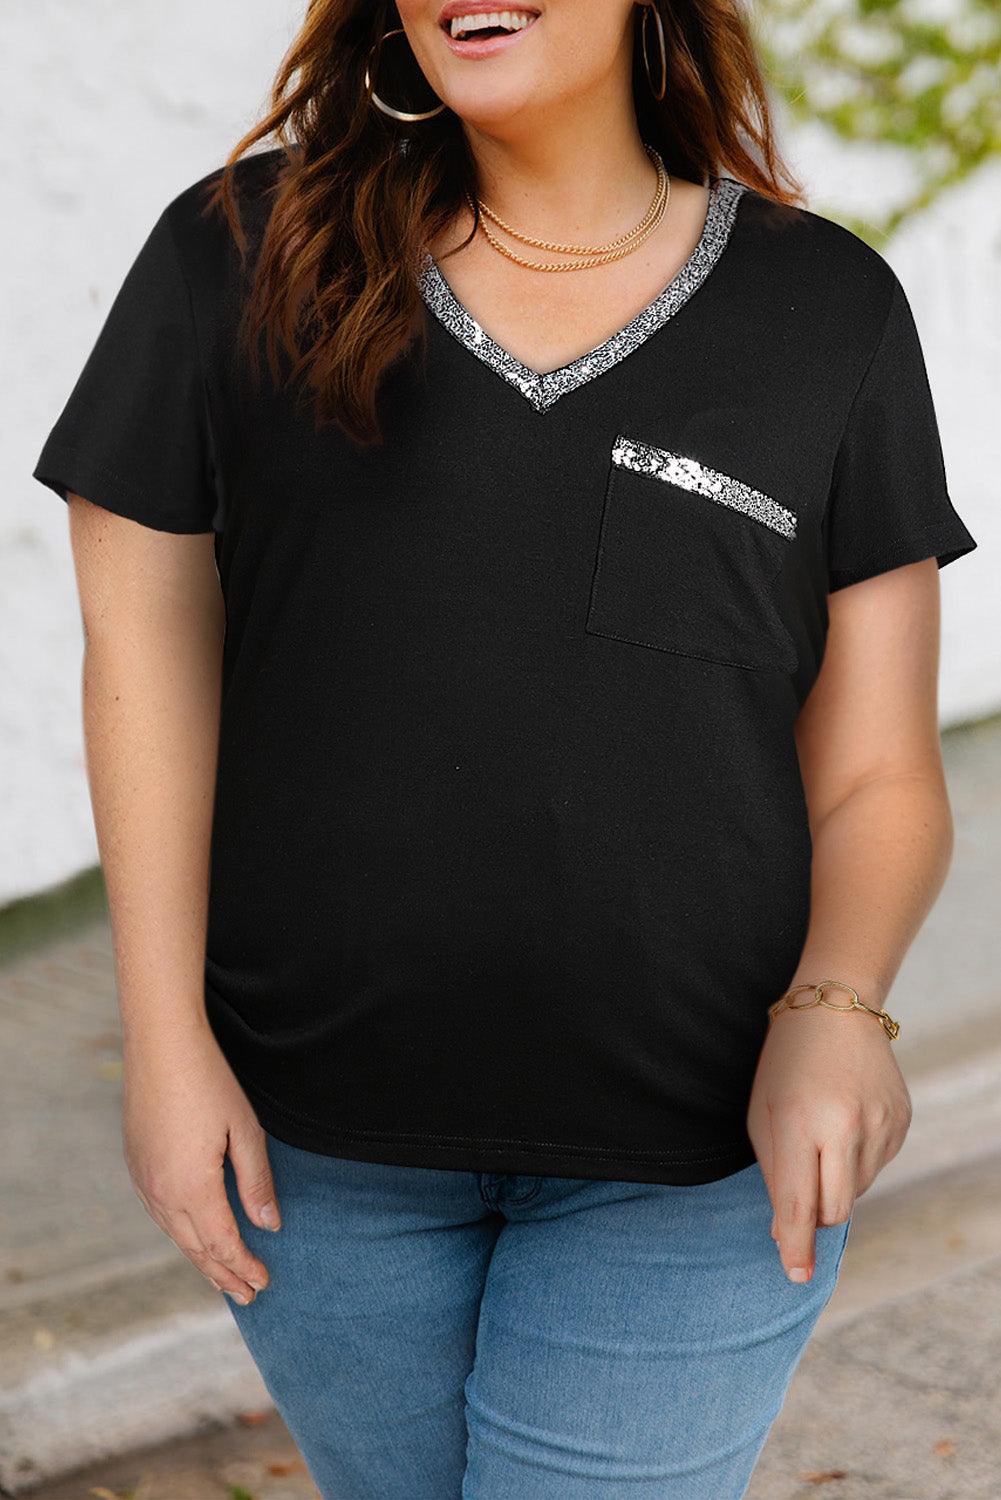 Cincinnati Bengals Women's Plus Size Lace-Up V-Neck T-Shirt - Heather Gray